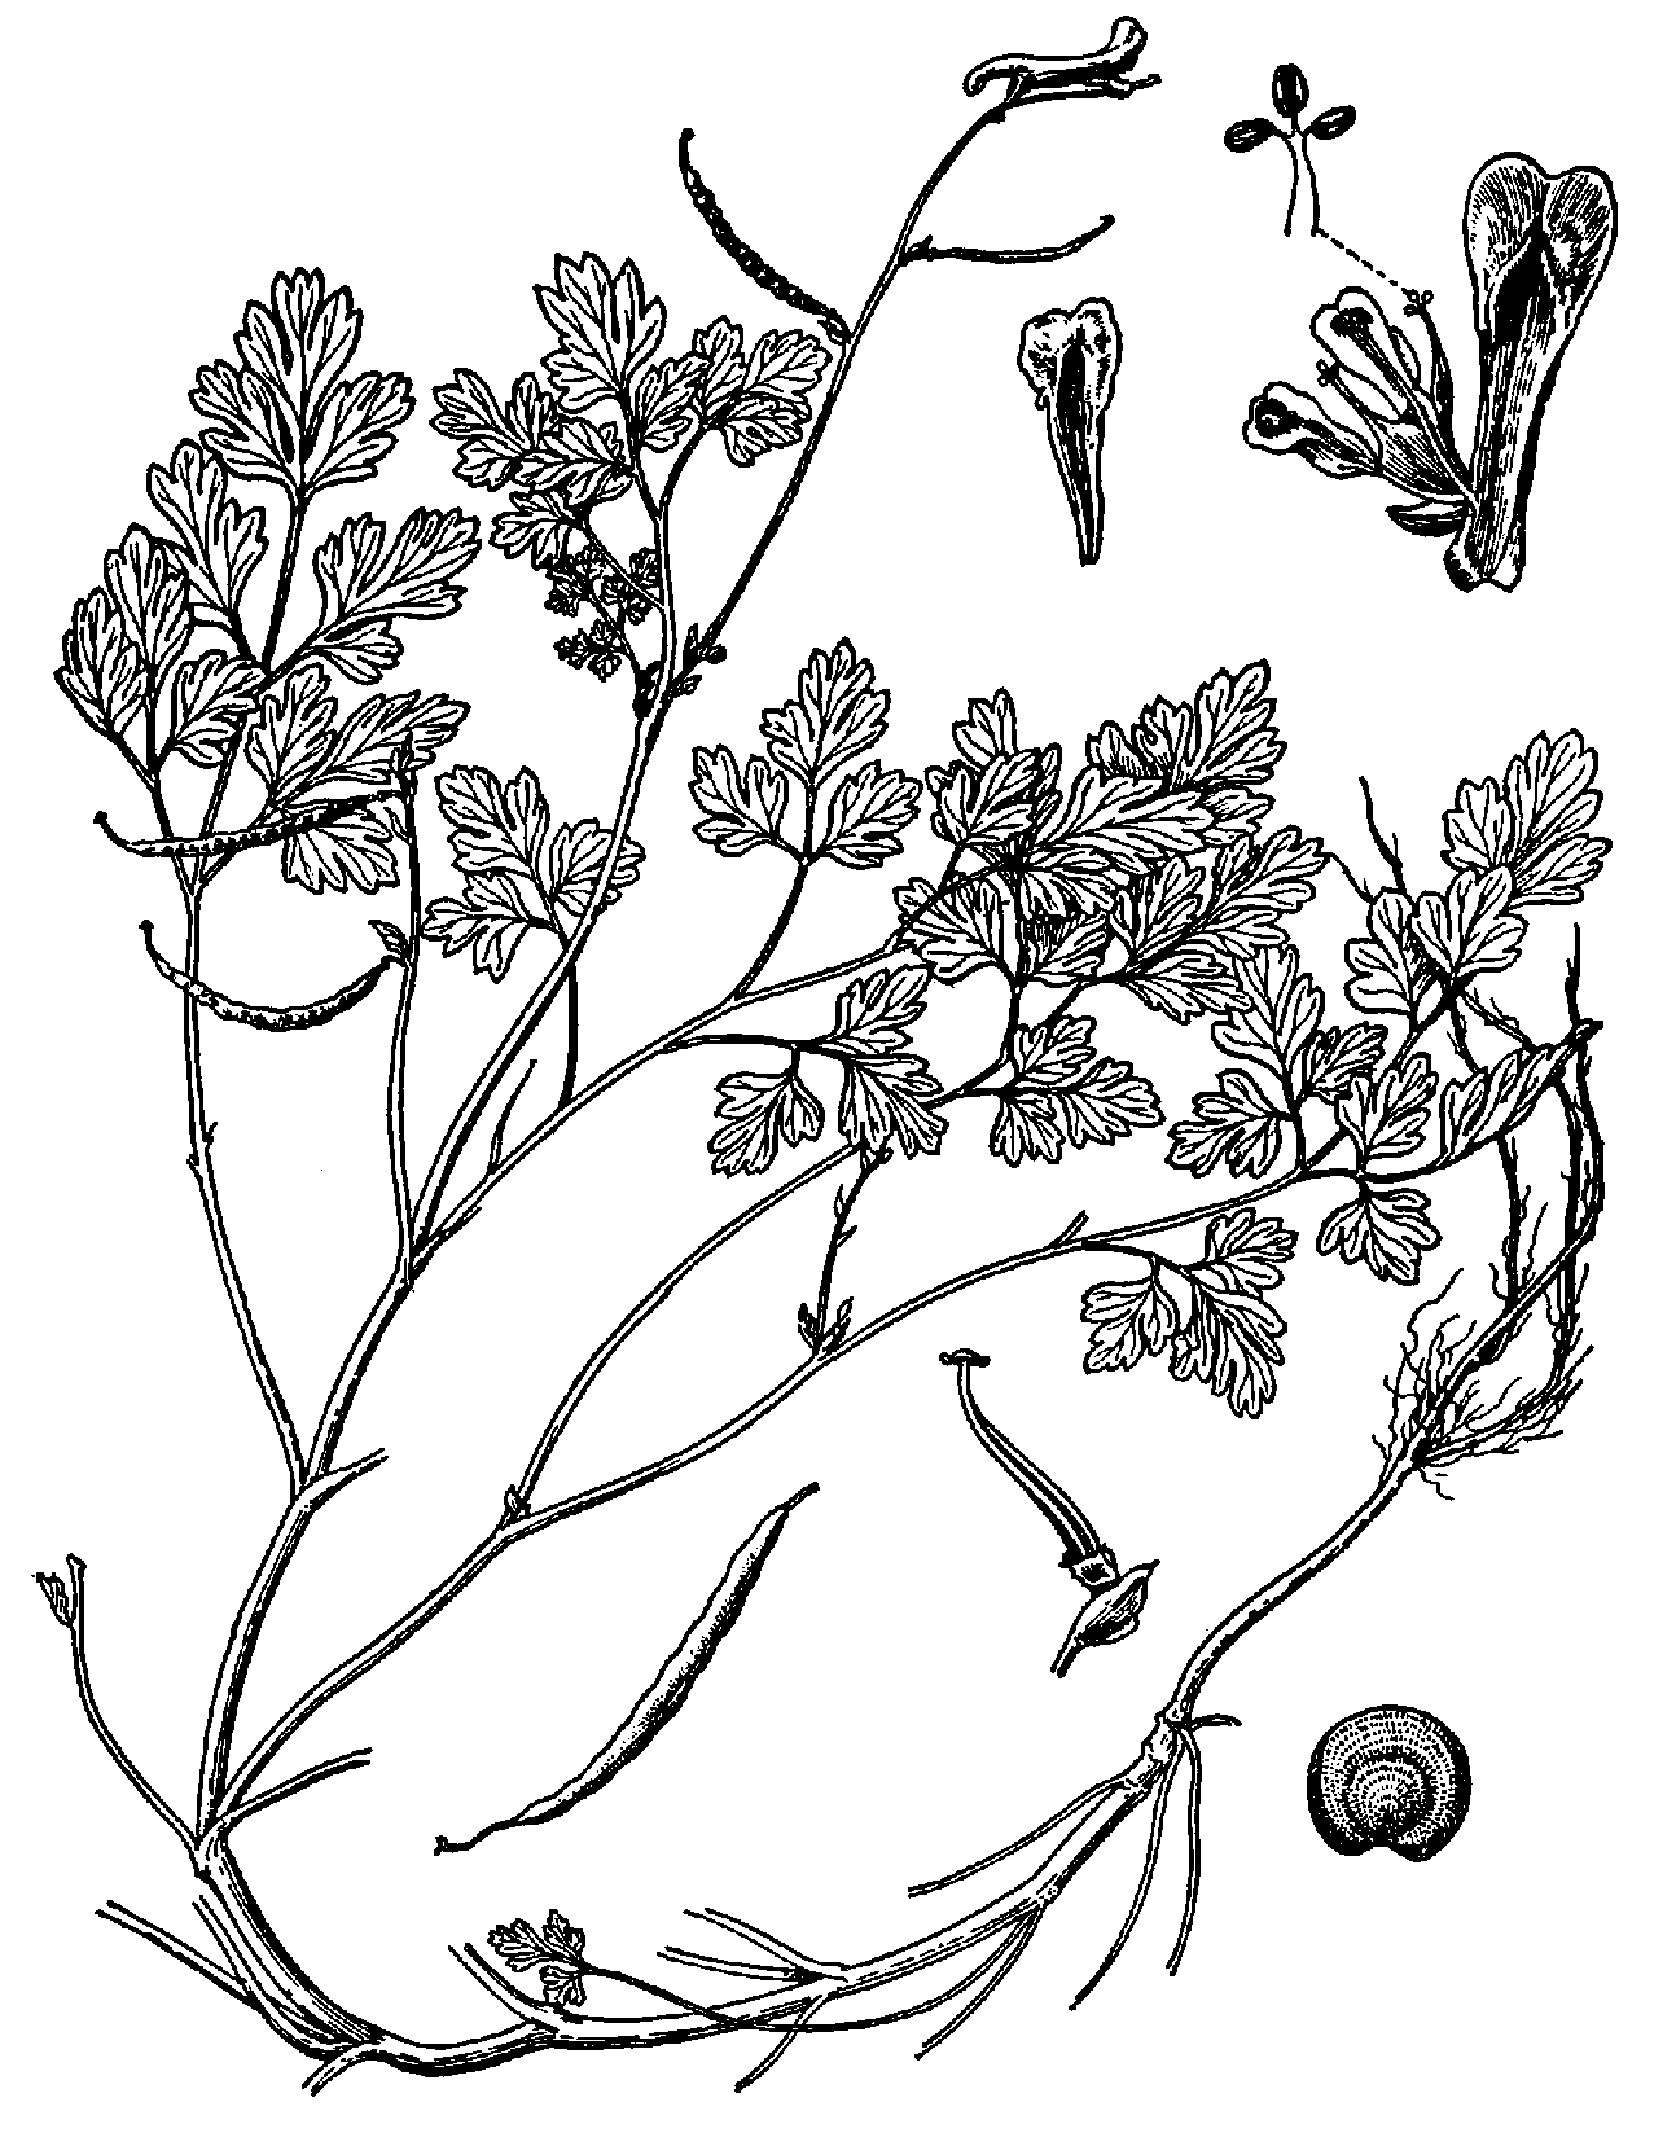 2. 紫堇